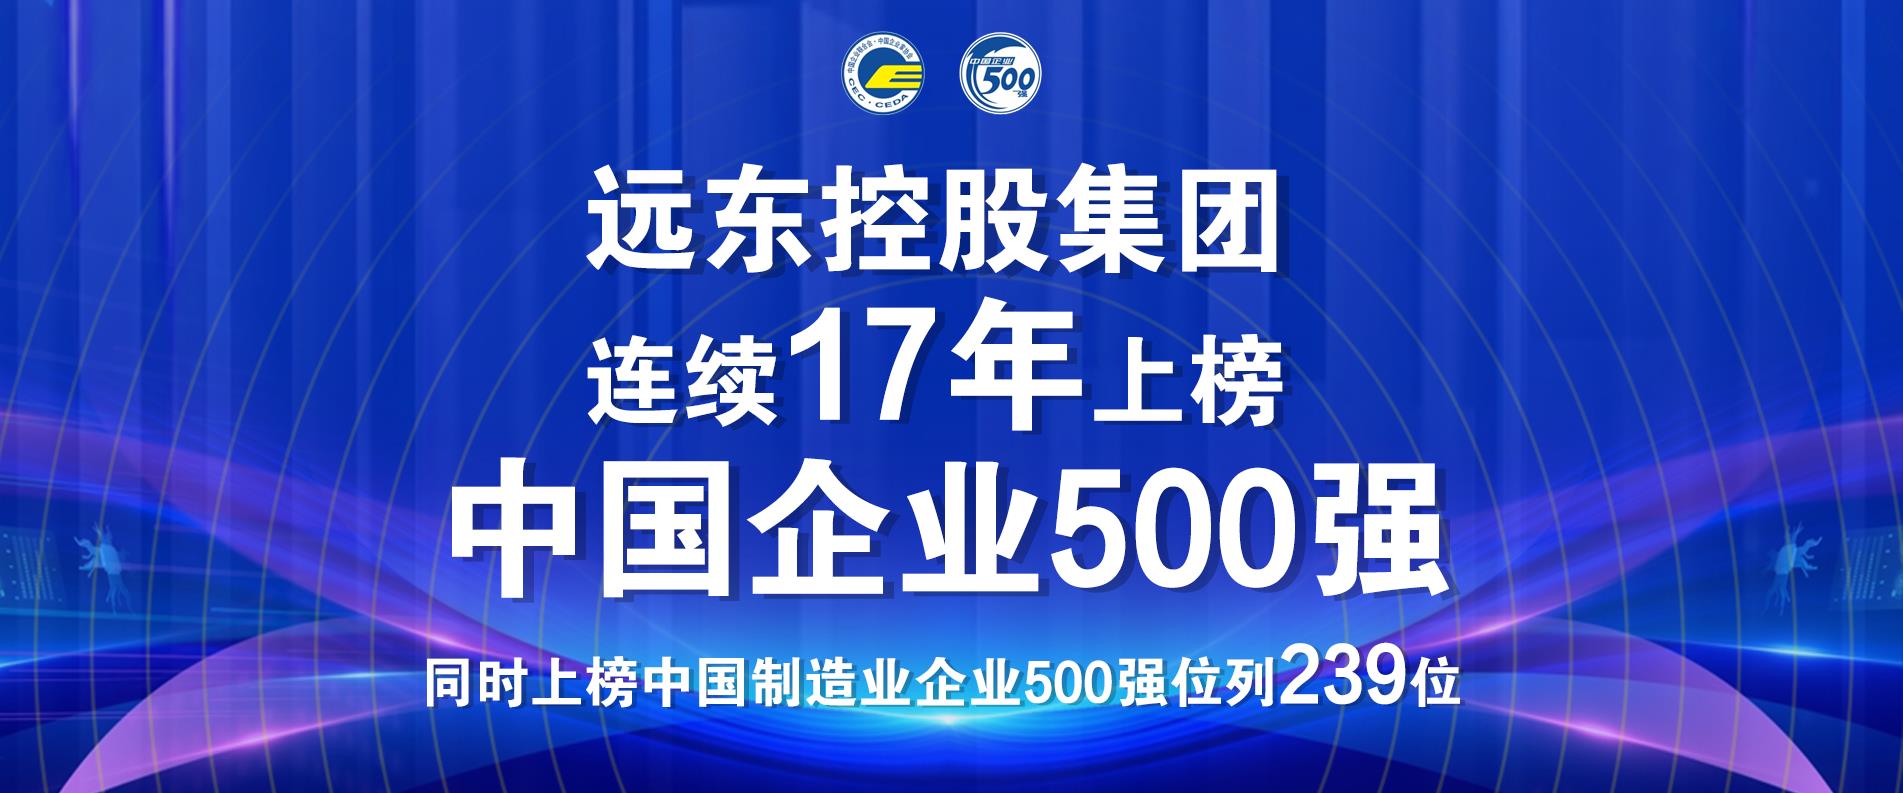 远东控股集团连续17年上榜中国企业500强